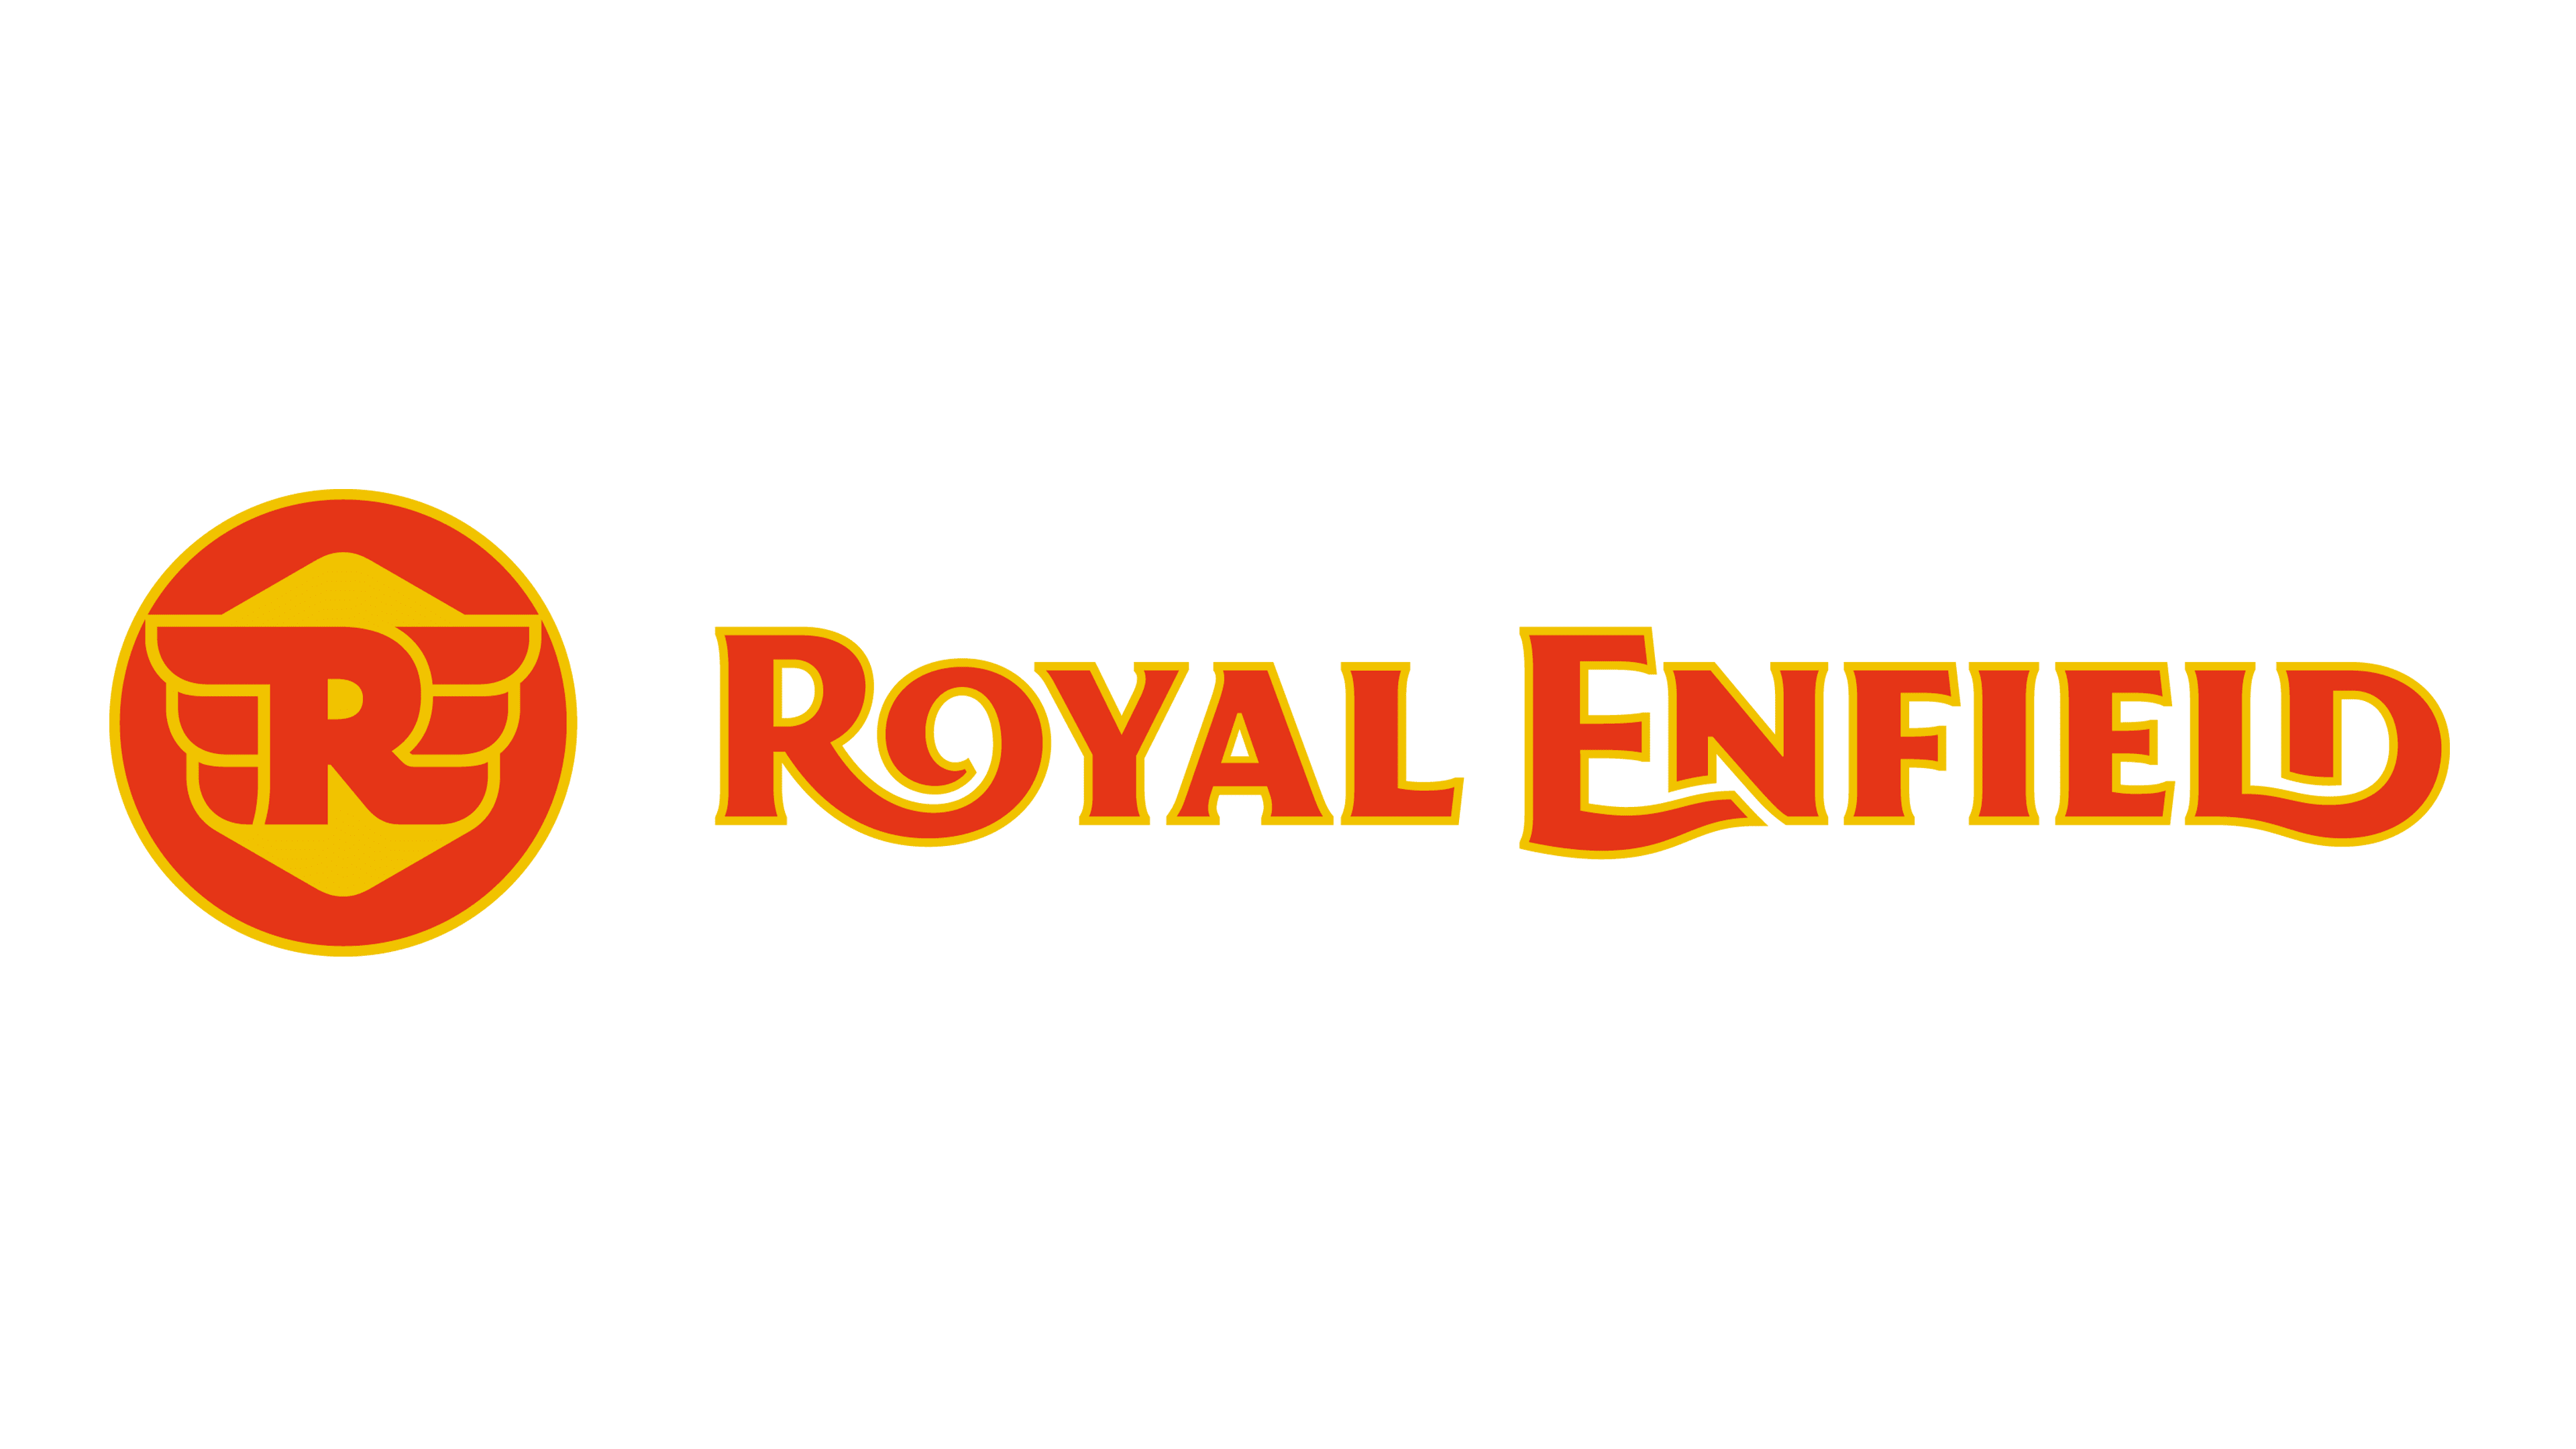 Royal-Enfield logo